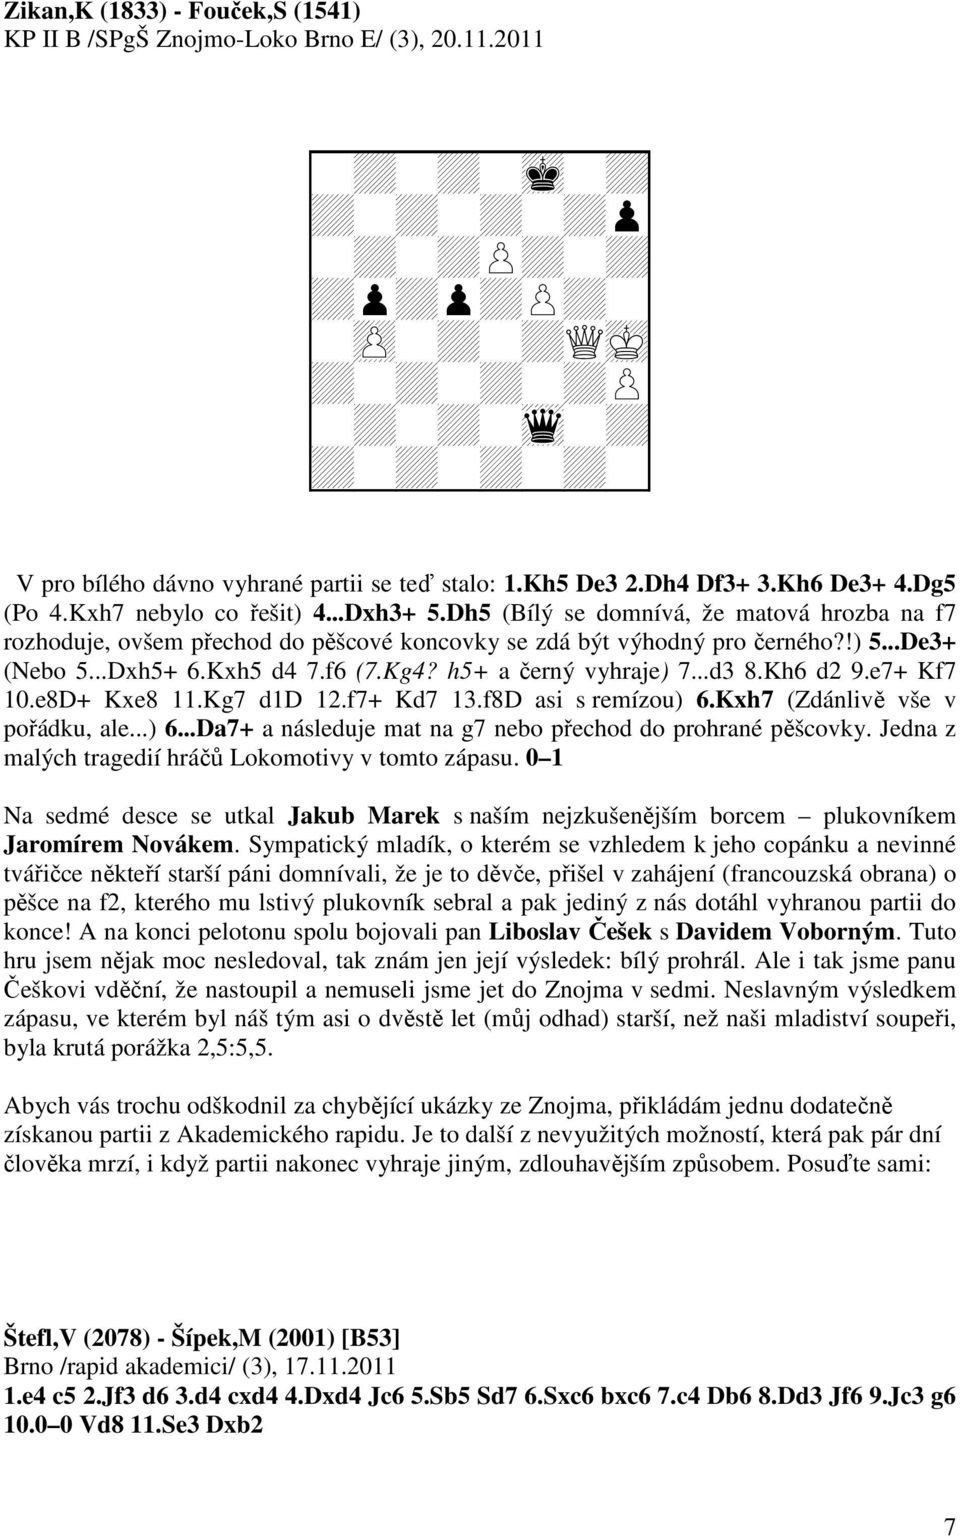 ..De3+ (Nebo 5...Dxh5+ 6.Kxh5 d4 7.f6 (7.Kg4? h5+ a černý vyhraje) 7...d3 8.Kh6 d2 9.e7+ Kf7 10.e8D+ Kxe8 11.Kg7 d1d 12.f7+ Kd7 13.f8D asi s remízou) 6.